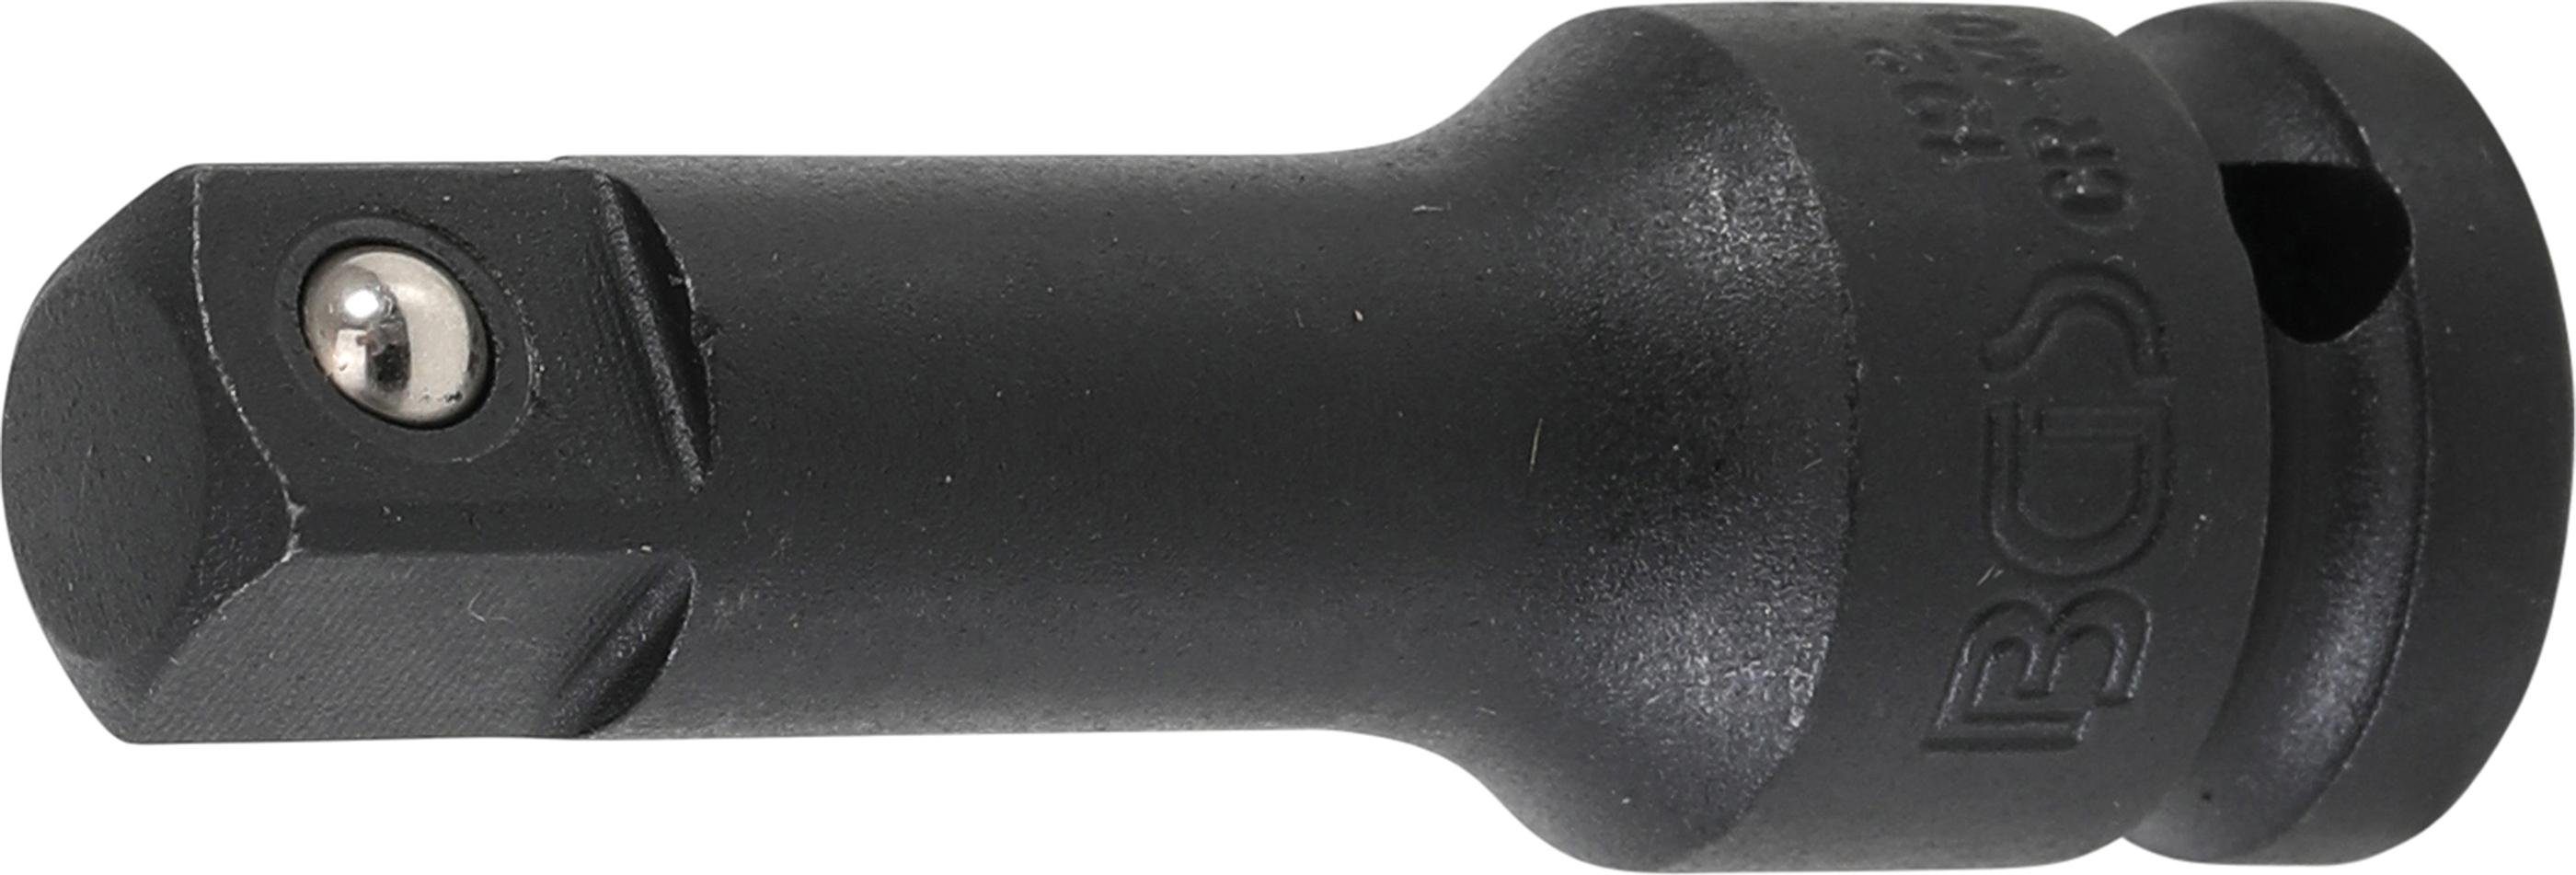 BGS Ratschenringschlüssel mm Kraft-Verlängerung, technic 12,5 (1/2), 75 mm